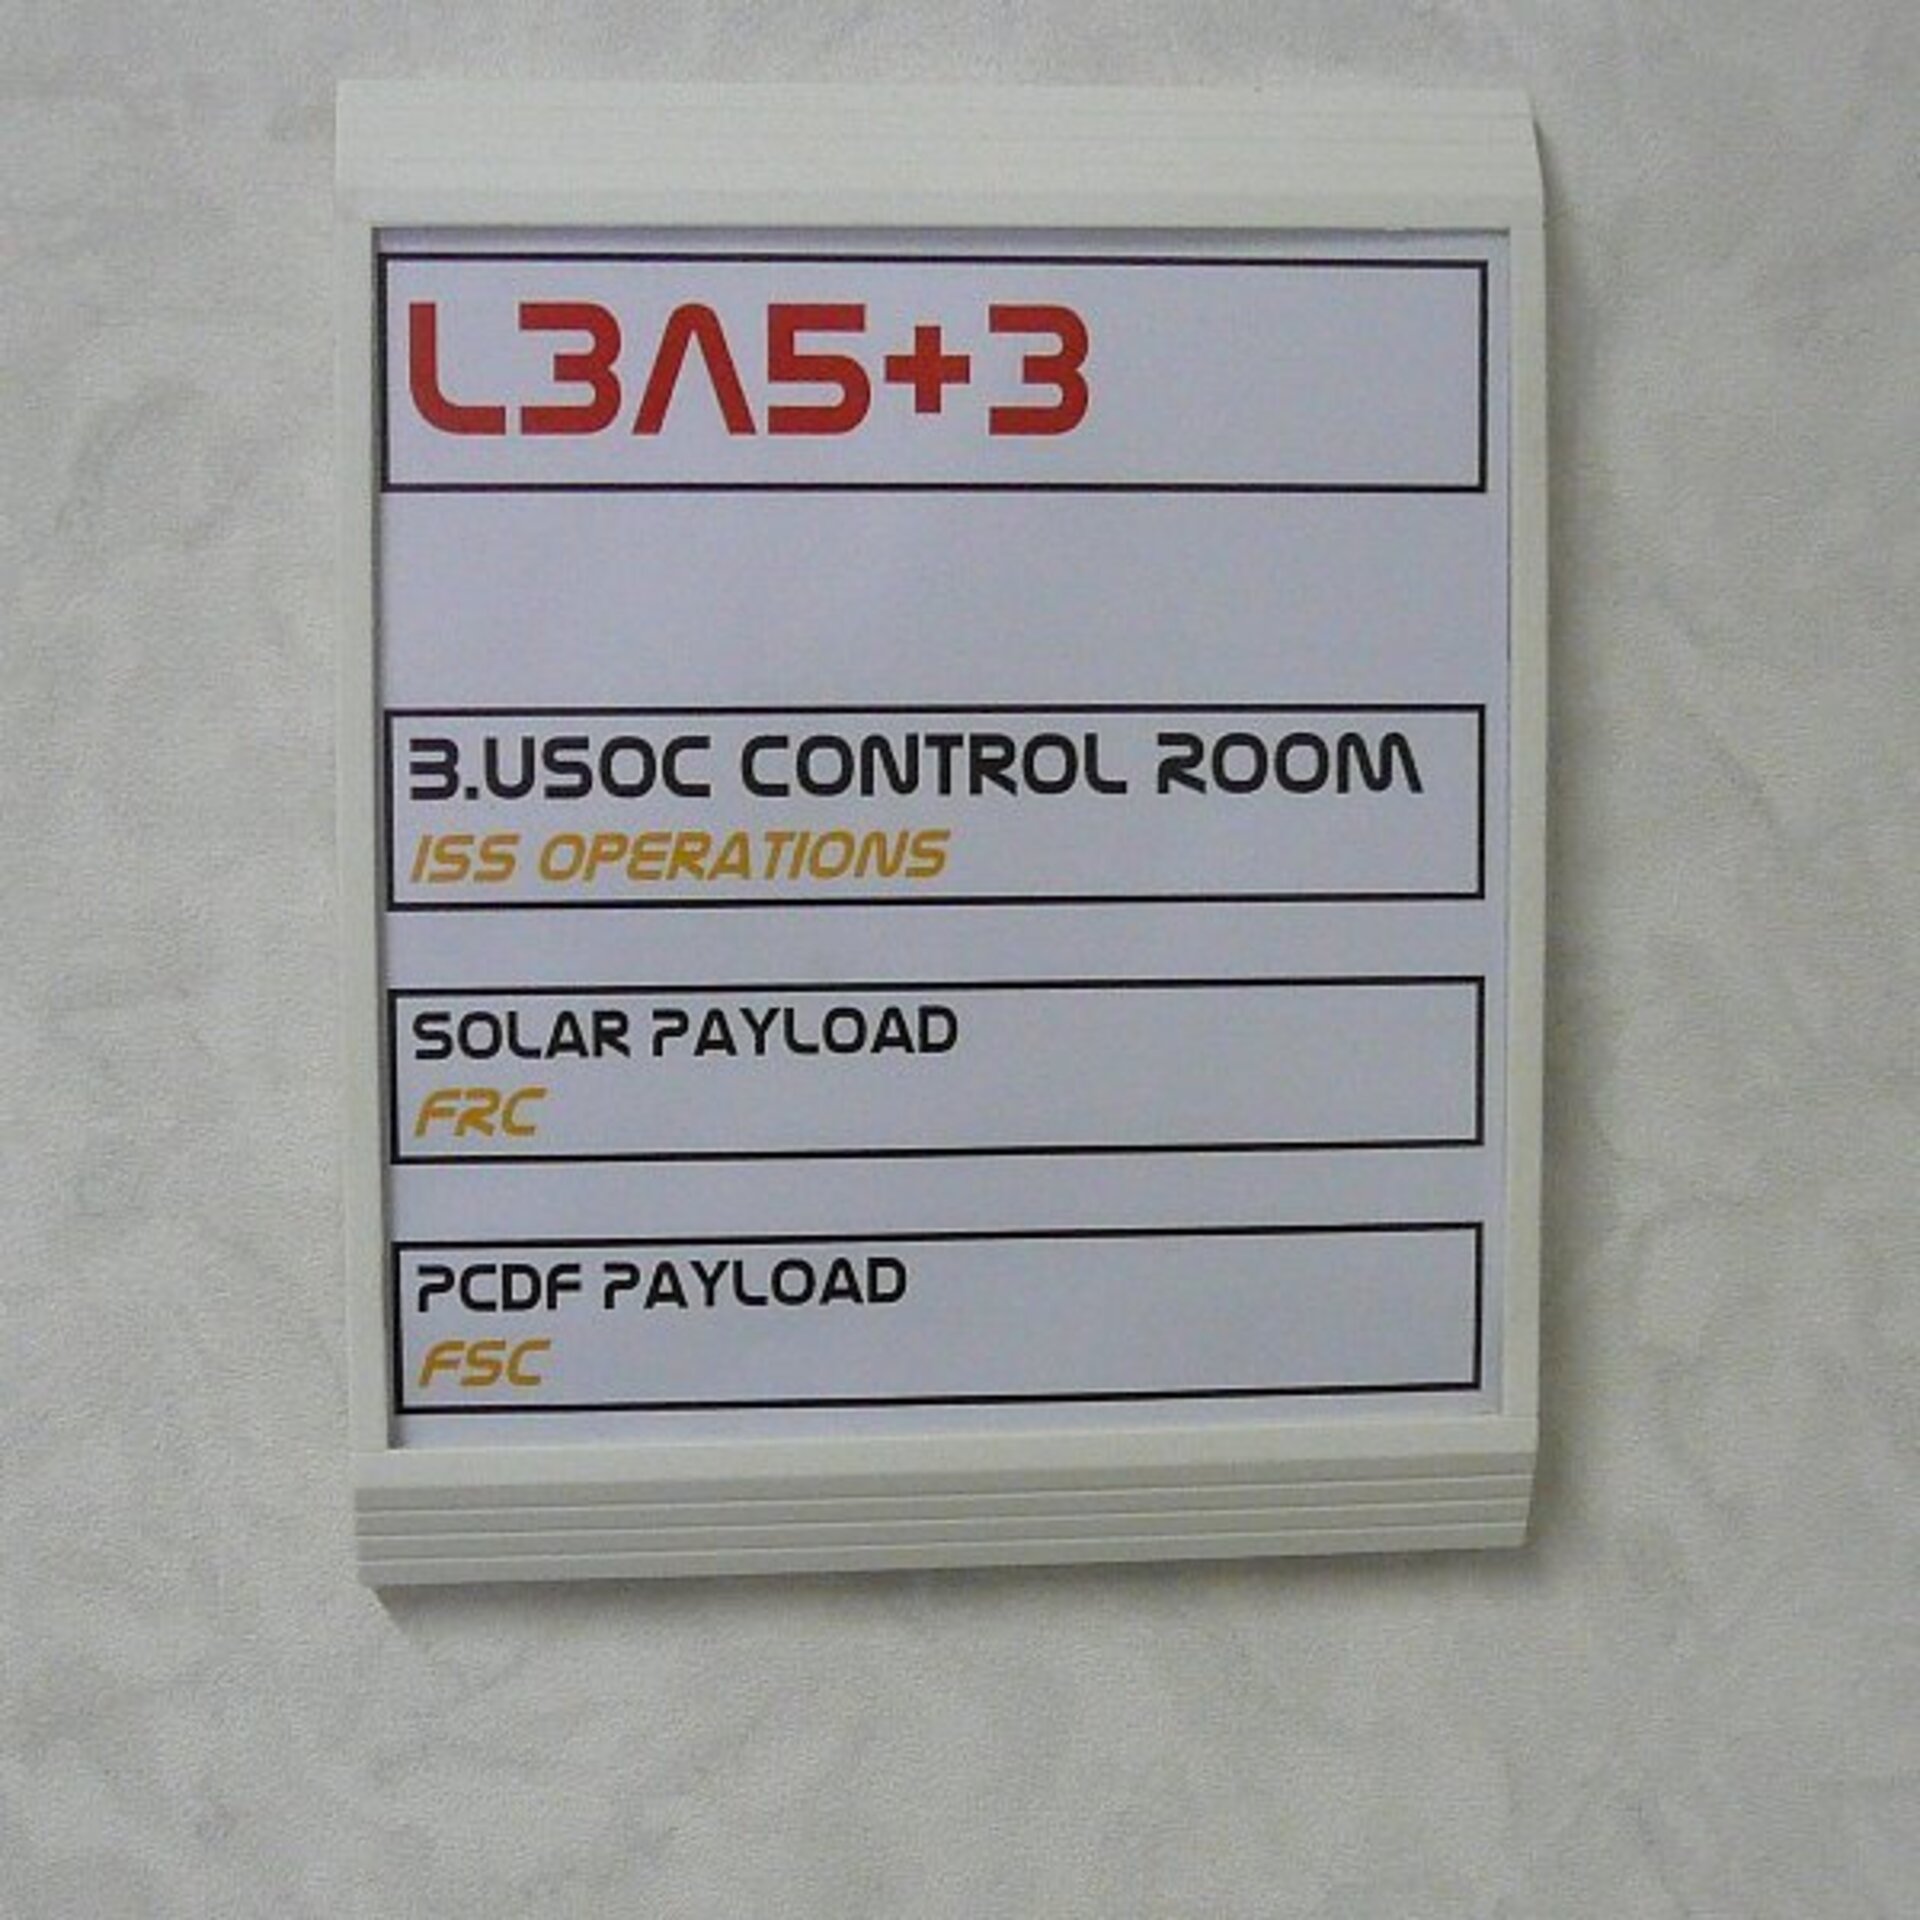 B.USOC control room